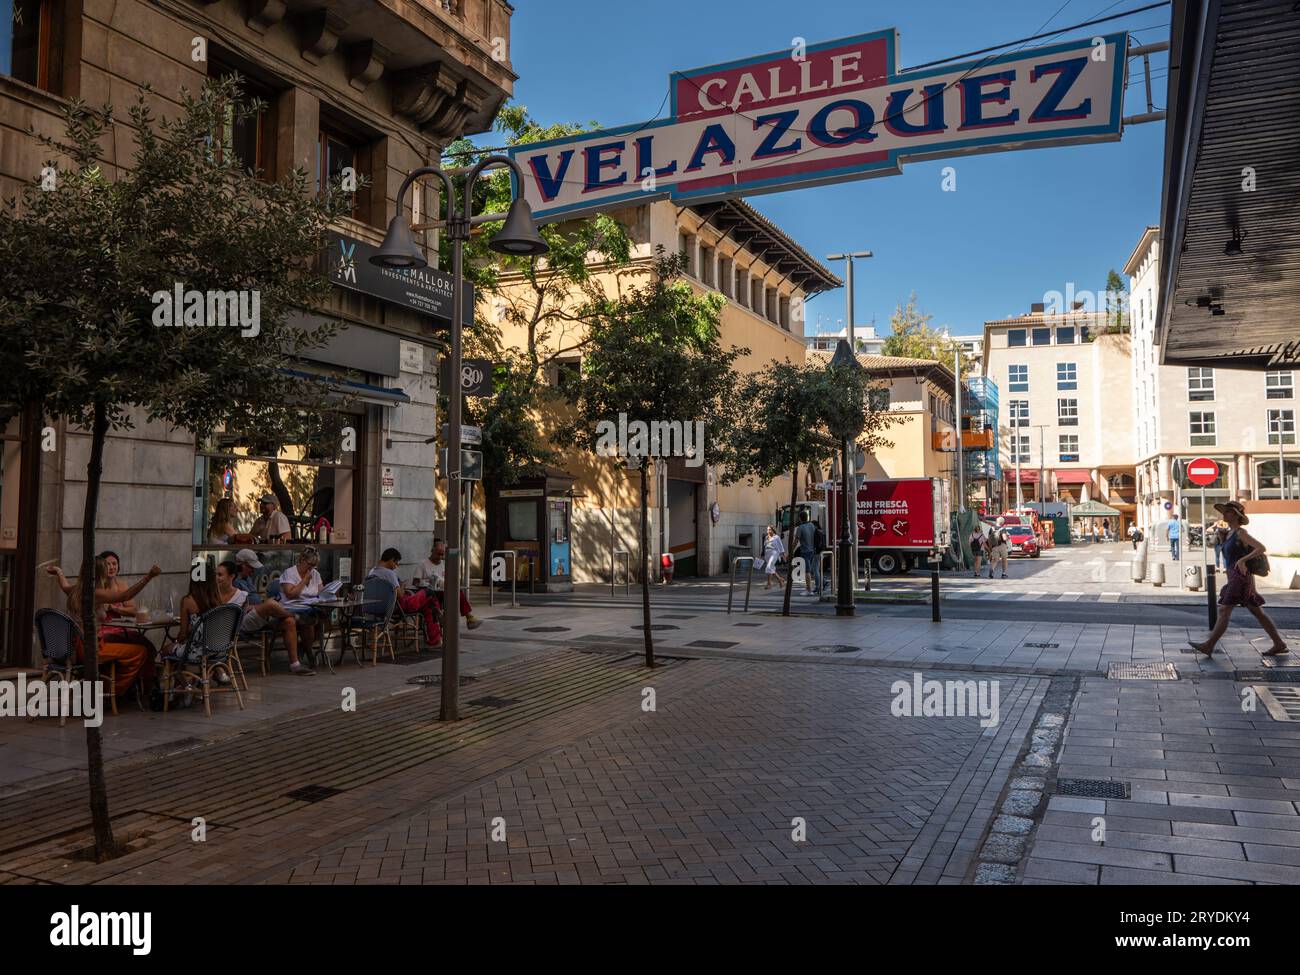 Calle Velazquez. Die Straße wurde zu Fußgängerzonen umgebaut, um lokale Unternehmen zu fördern und verbindet die Straße mit der beliebten Einkaufsstraße von Sindicato. Mallorca Stockfoto